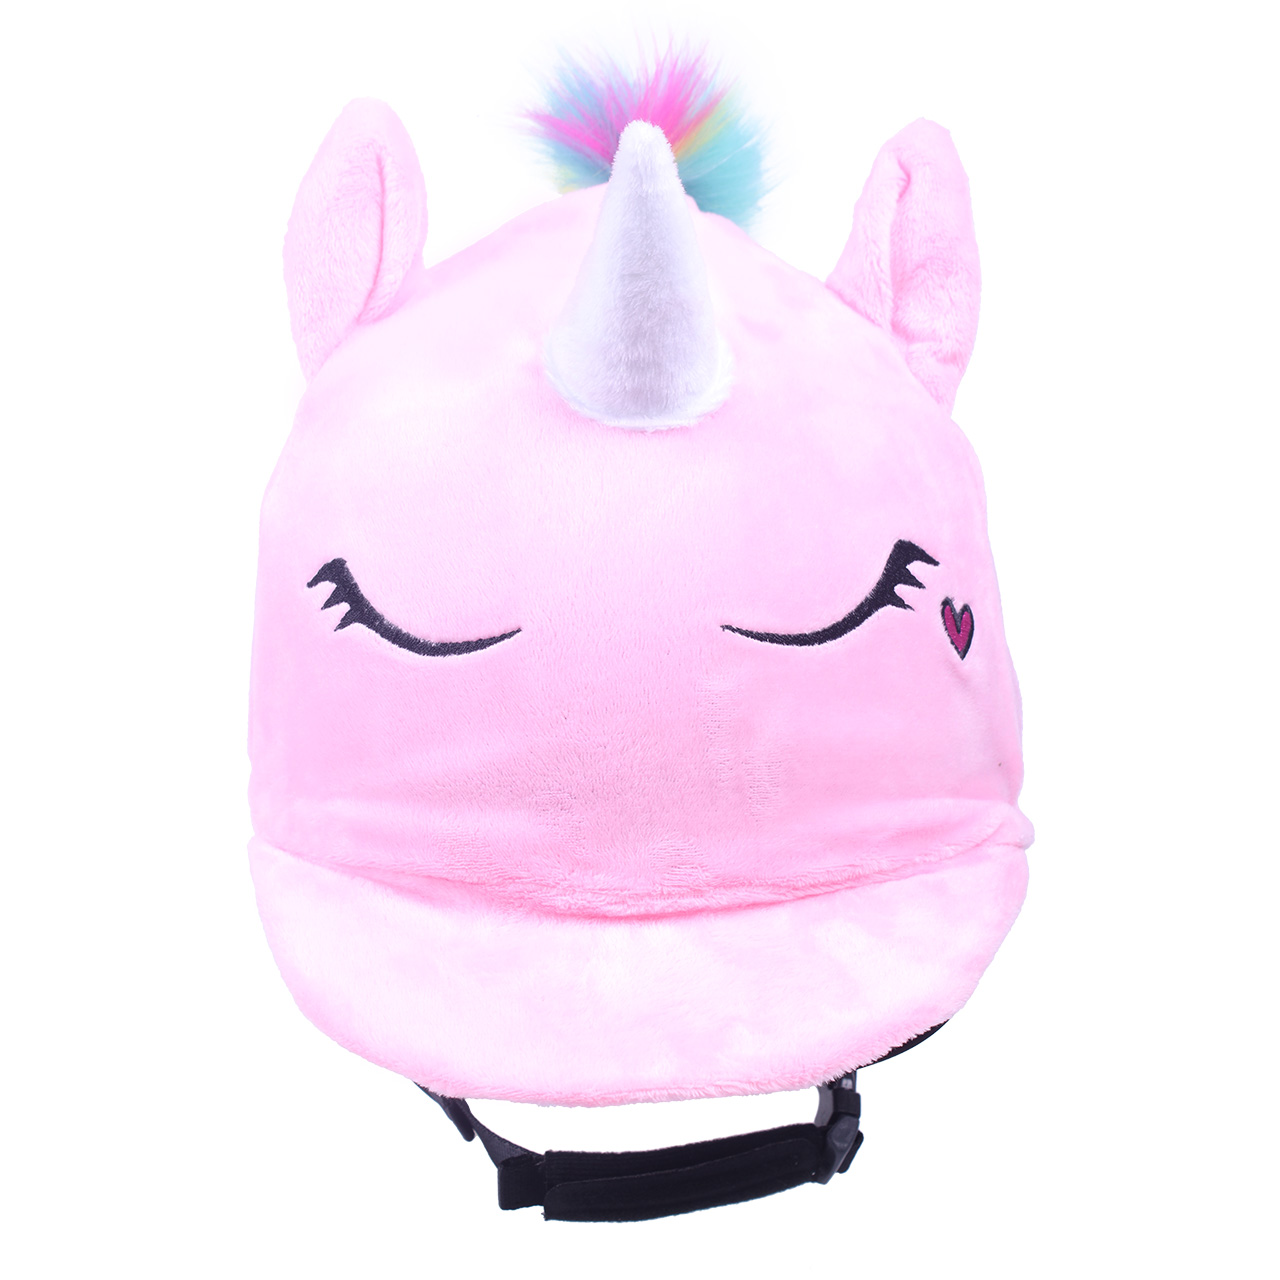 unicorn helmet cover